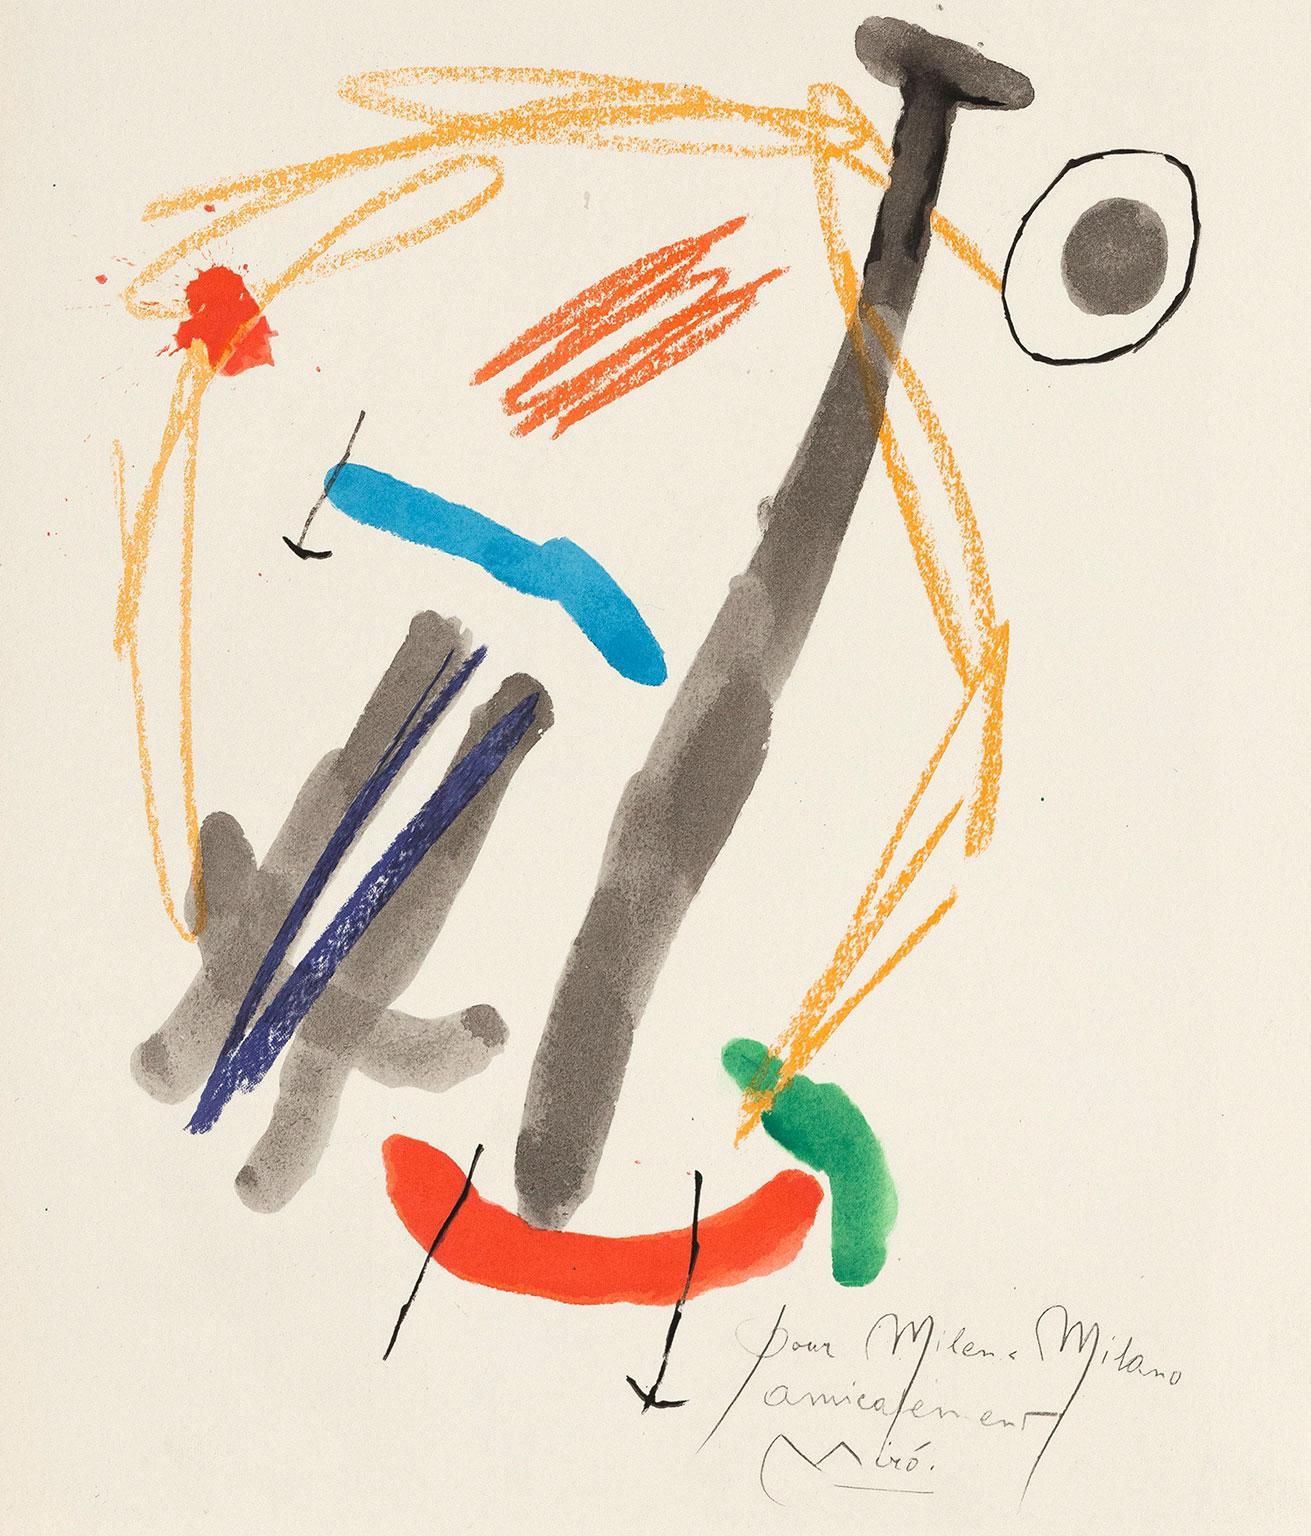 Joan Miró ist einer der größten Künstler des 20. Jahrhunderts. Als Maler:: Bildhauer:: Grafiker und Keramiker ist er international bekannt. 

Mirós Arbeiten:: die an der Schnittstelle zwischen Surrealismus und Abstraktion angesiedelt waren::